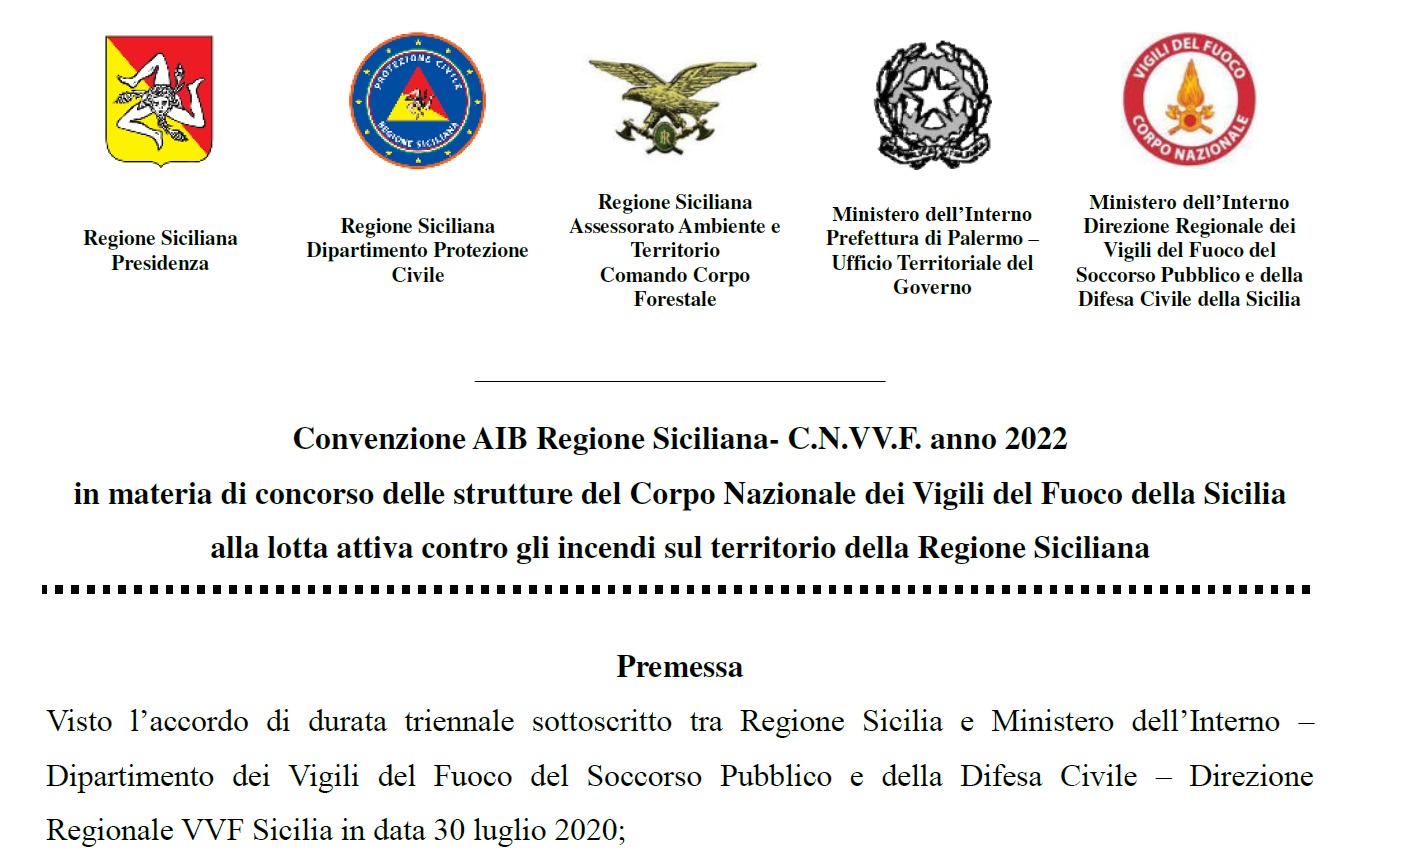 PALERMO,  Convenzione AIB per il  2022 in materia di concorso delle strutture del Corpo Nazionale dei Vigili del Fuoco della Sicilia alla lotta attiva contro gli incendi.